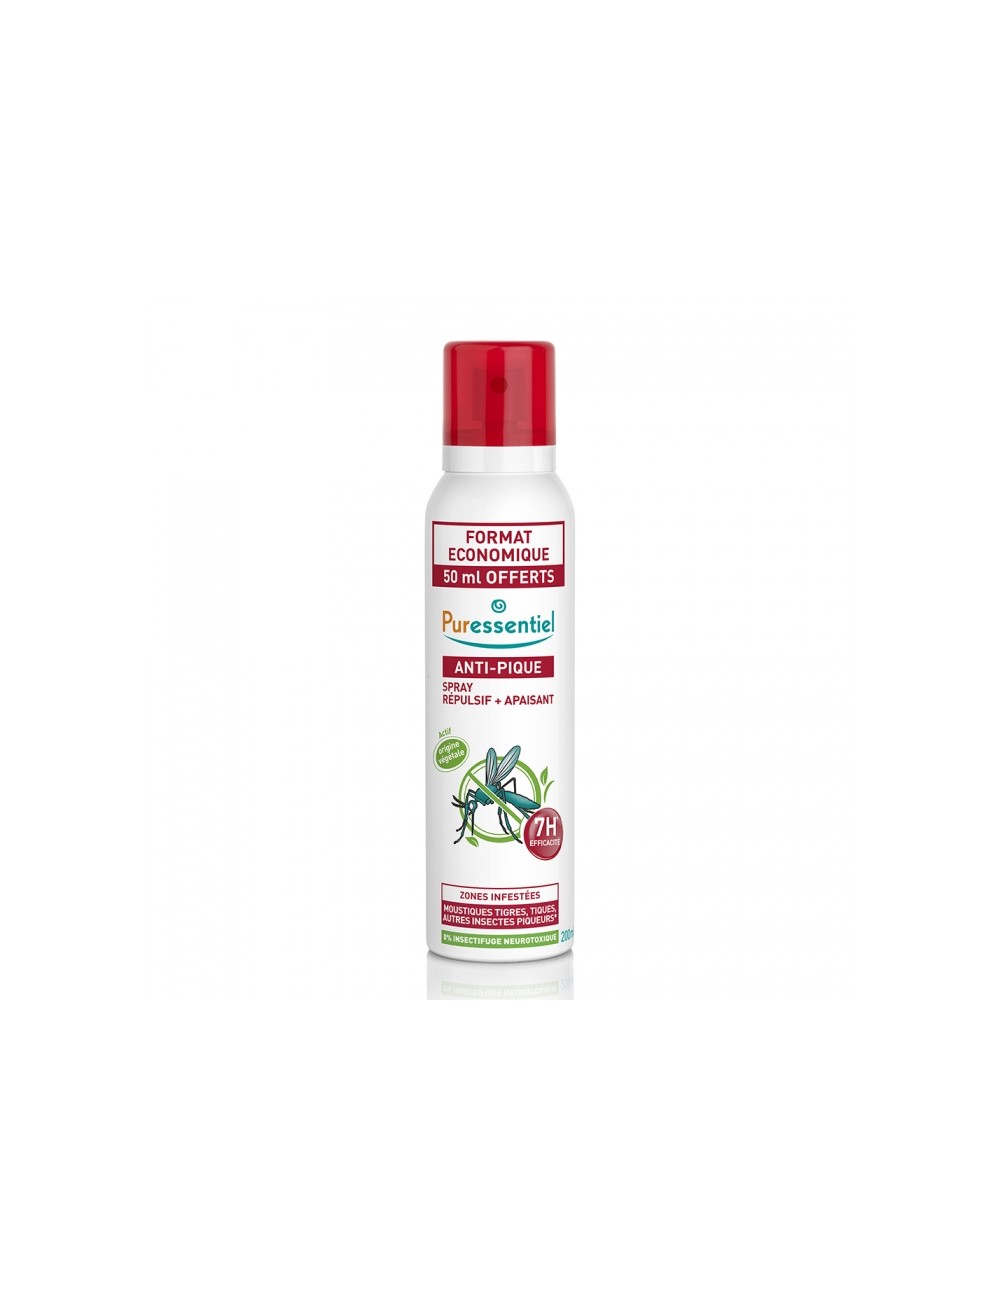 Puressentiel Antipique Spray Répulsif Anti-Pique 200ml